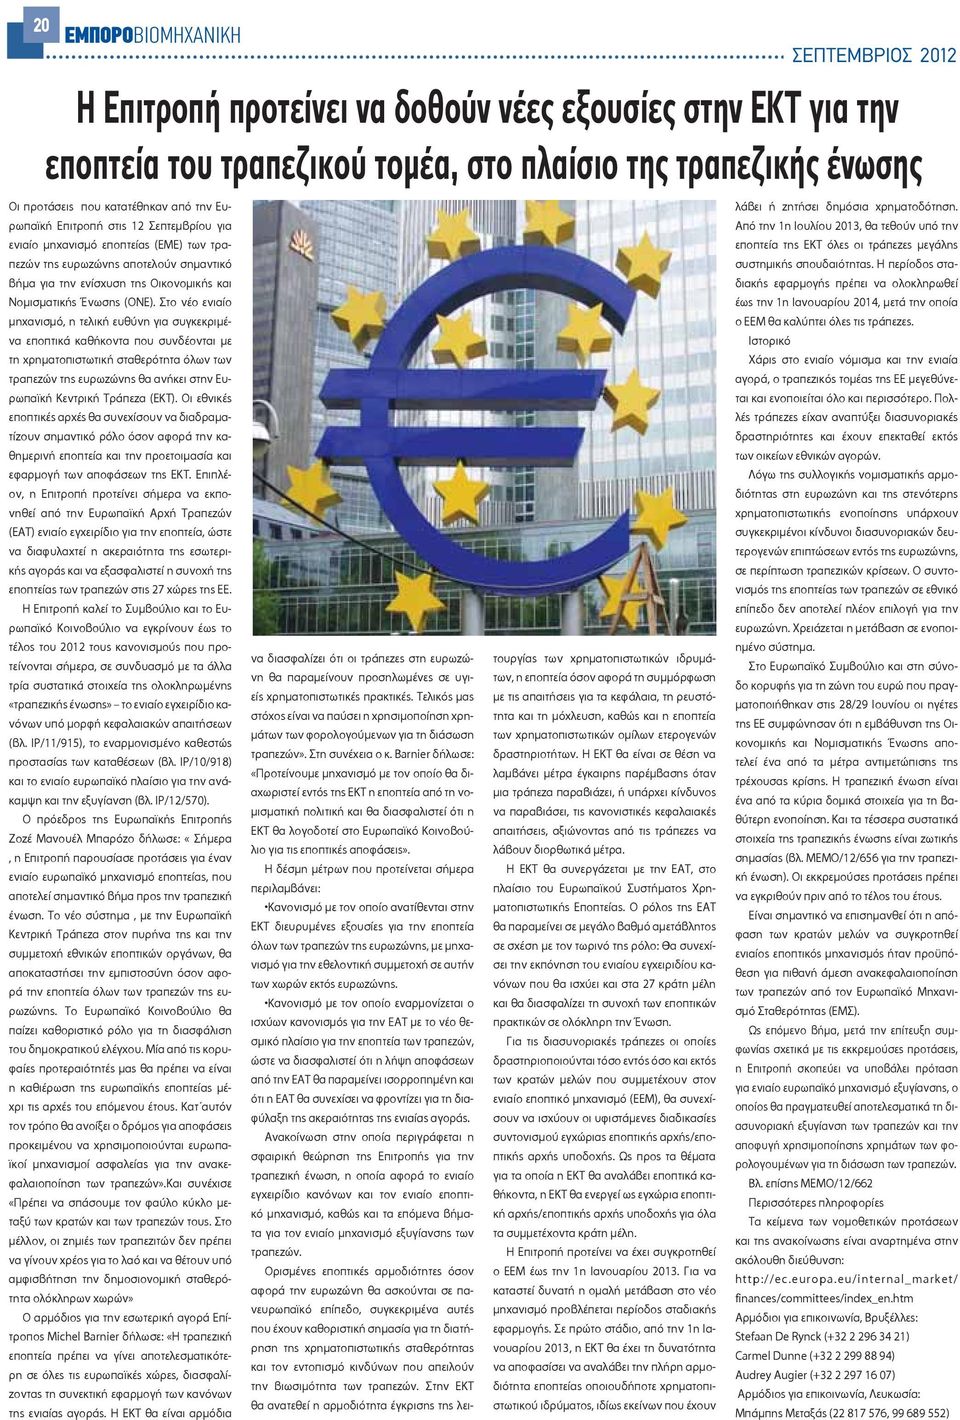 Στο νέο ενιαίο μηχανισμό, η τελική ευθύνη για συγκεκριμένα εποπτικά καθήκοντα που συνδέονται με τη χρηματοπιστωτική σταθερότητα όλων των τραπεζών της ευρωζώνης θα ανήκει στην Ευρωπαϊκή Κεντρική